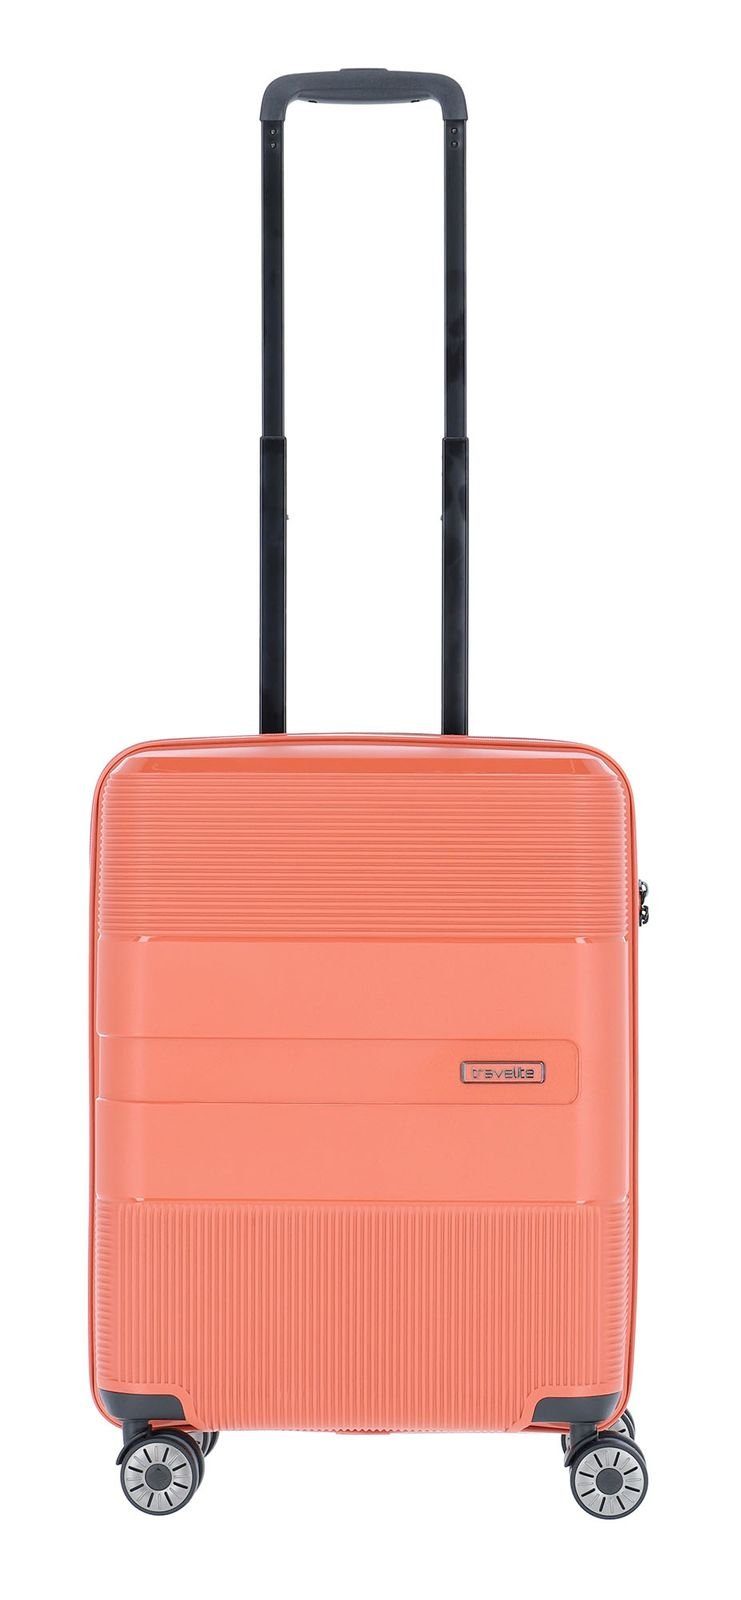 Travelite Handgepäck online kaufen